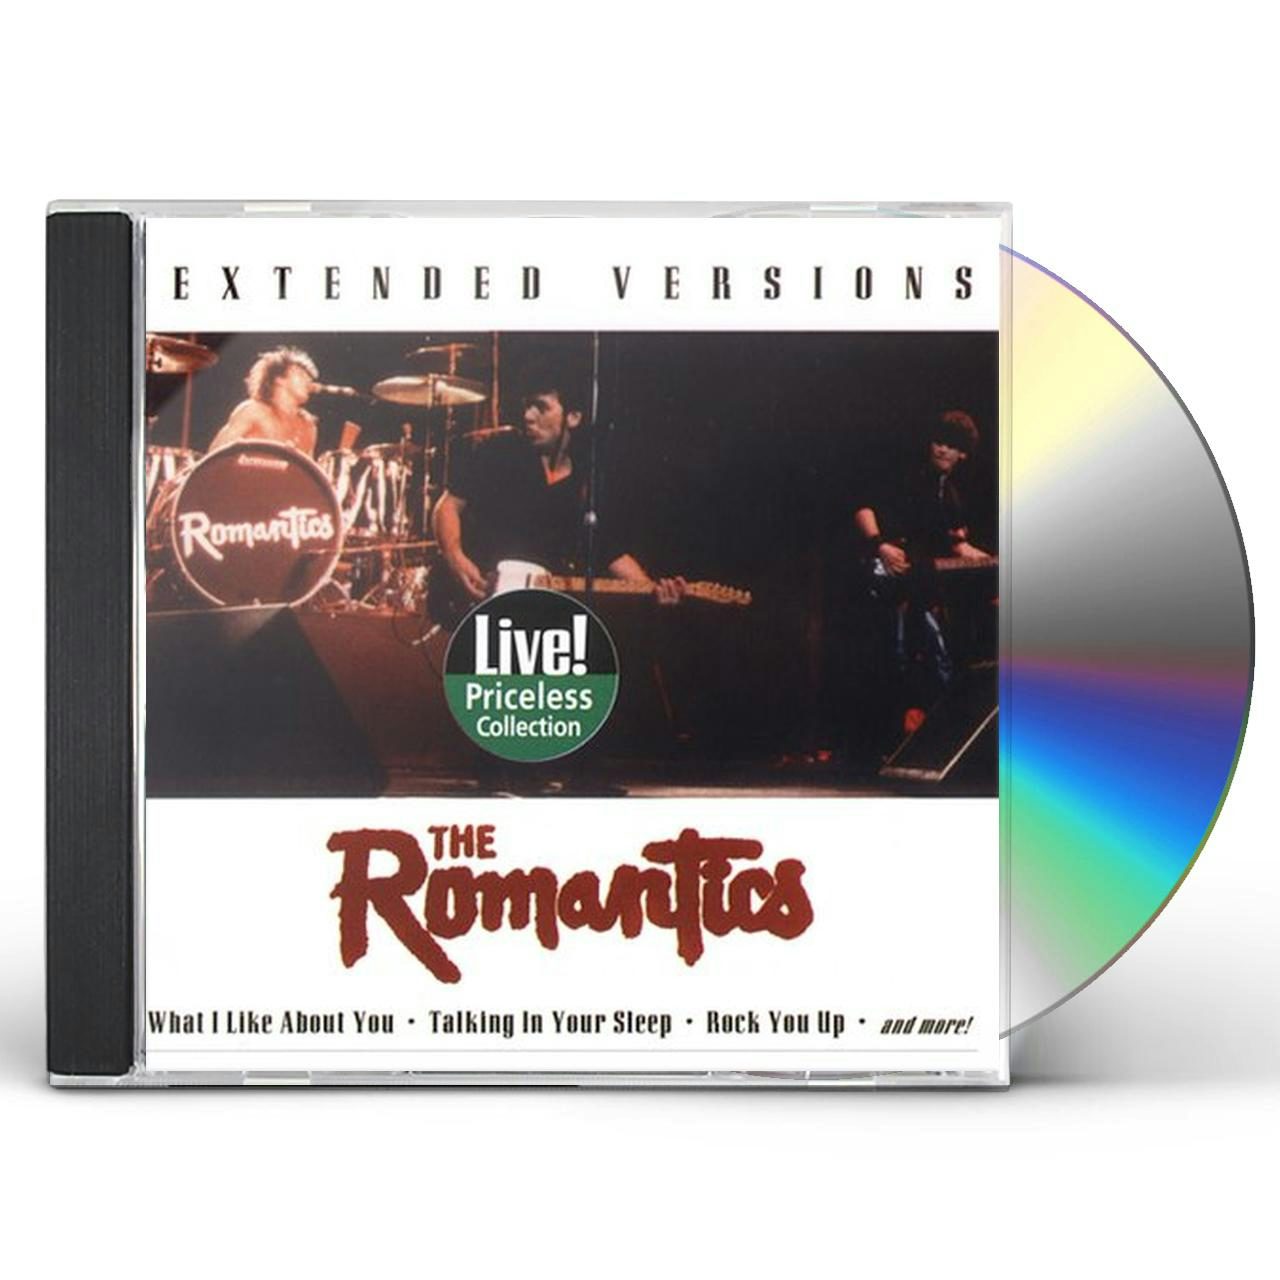 The Romantics SUPER HITS CD $15.99$14.49